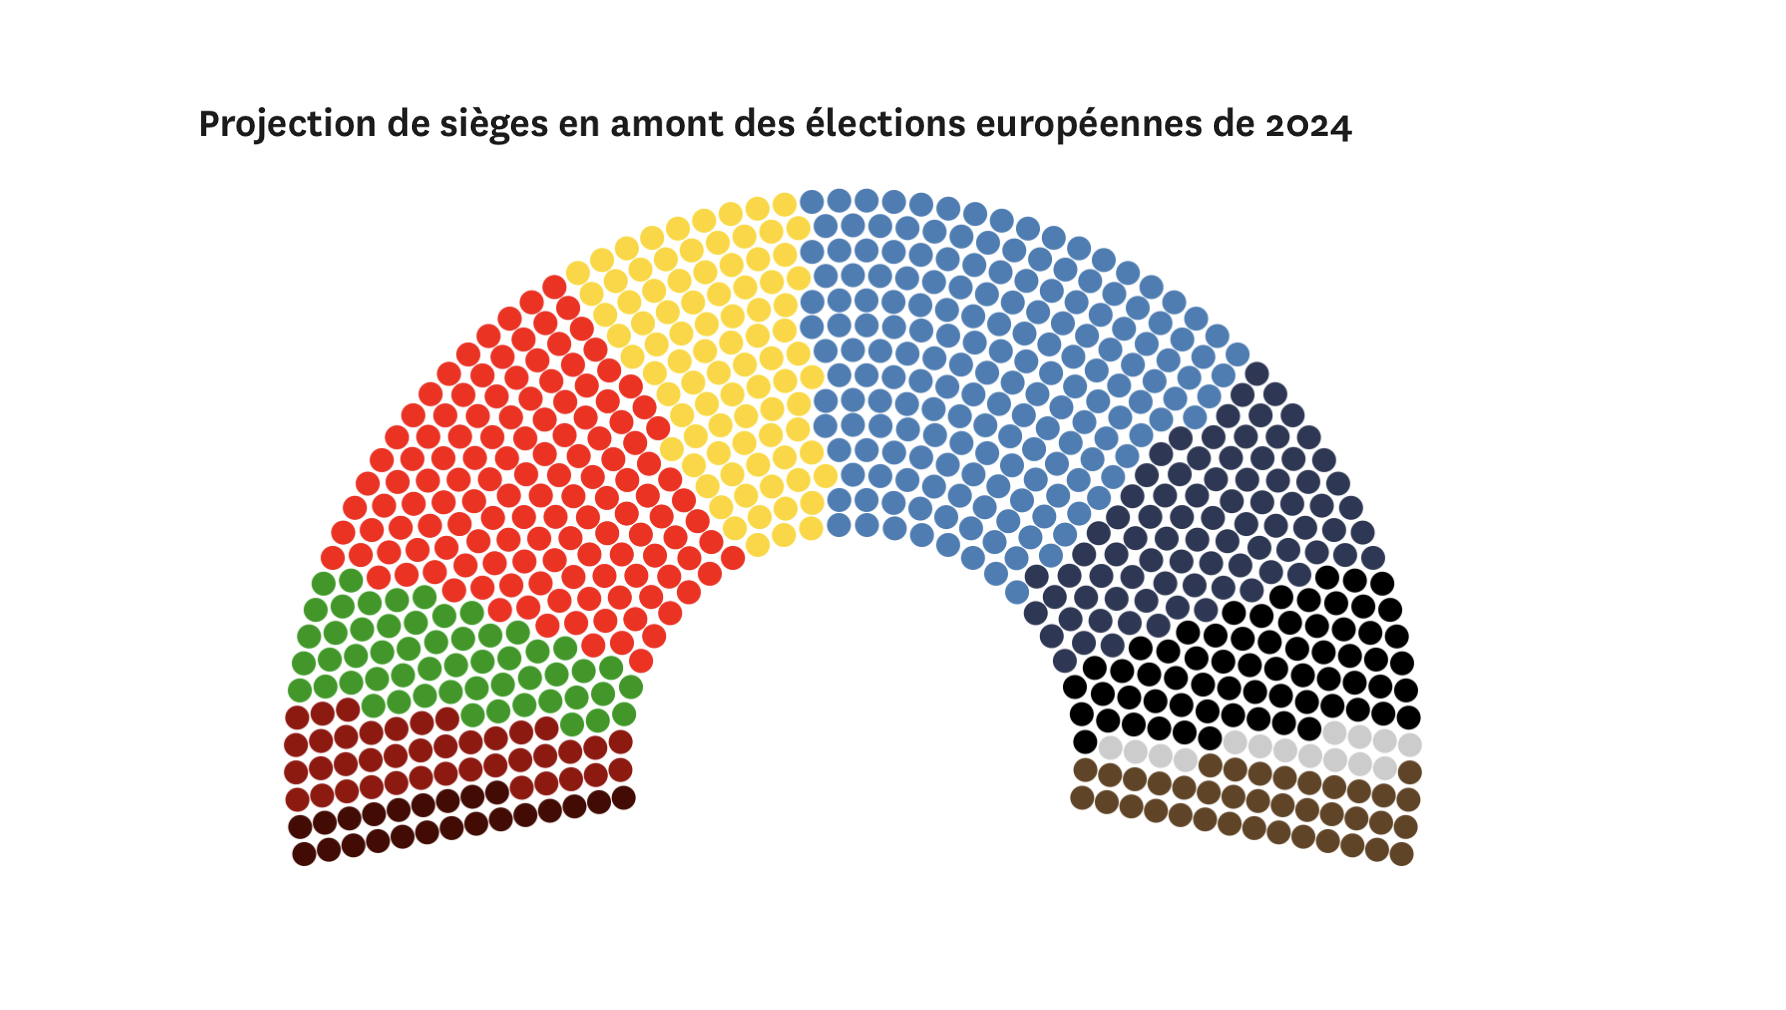 Exklusive Einschätzung Europäer 2024: rechte und rechtsextreme Mehrheiten wahrscheinlich.  Das Wachstum der Konservativen;  Die Grünen und der Untergang der Liberalen